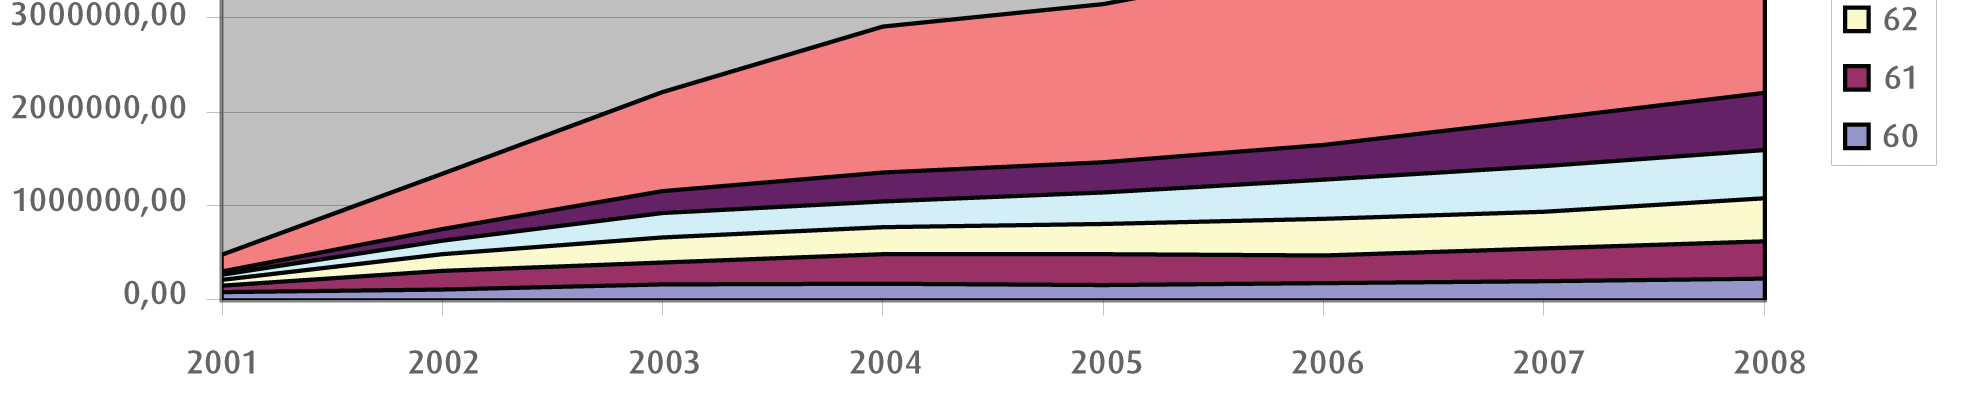 ambtenaren) ligt voor de periode 2001-2008 tussen de 61,09 jaar (in 2001) en de 60,84 jaar (in 2008).